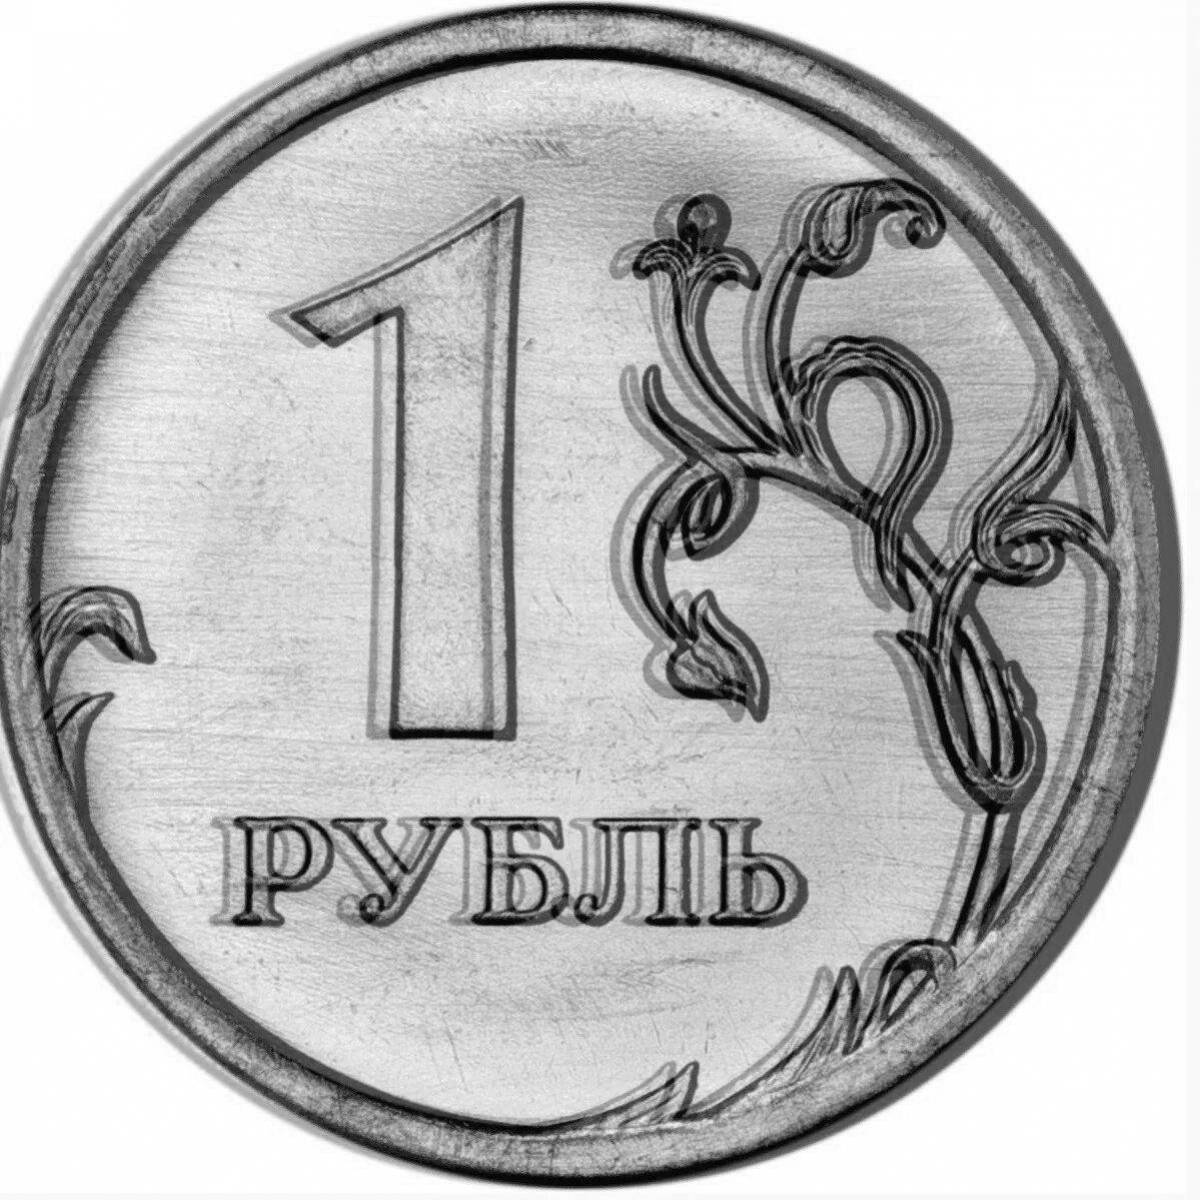 Агентство рубль. Монета 1 рубль. Изображение монеты 1 рубль. Монета 1 рубль на прозрачном фоне. Монета 1 рубль 2020 года.